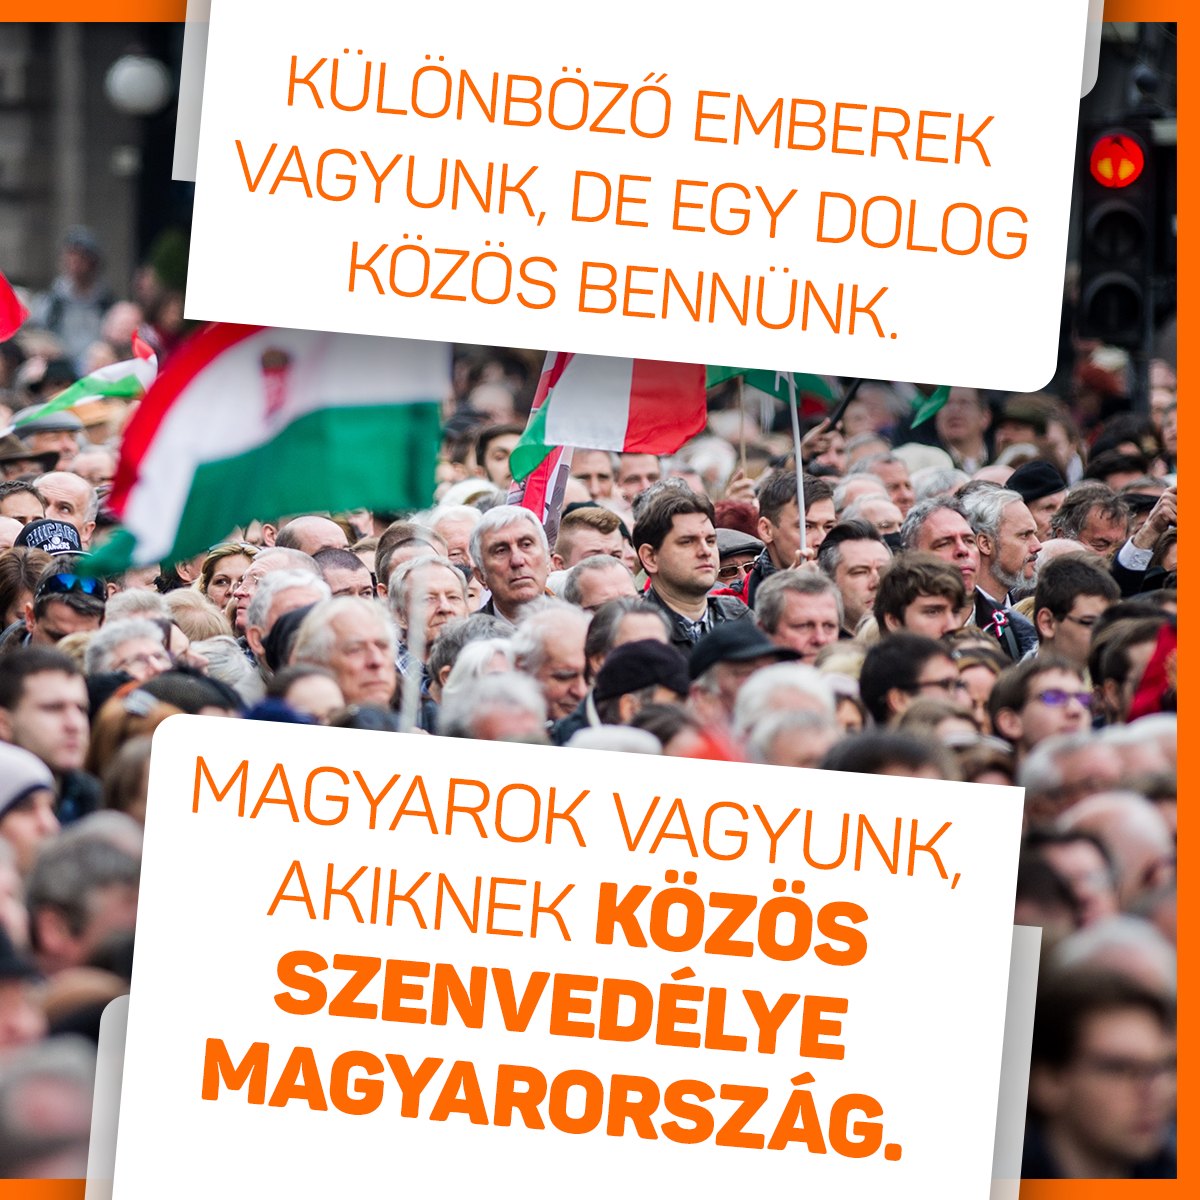 Különböző emberek vagyunk, de egy dolog közös bennünk. Magyarok vagyunk, akiknek közös szenvedélye Magyarország.